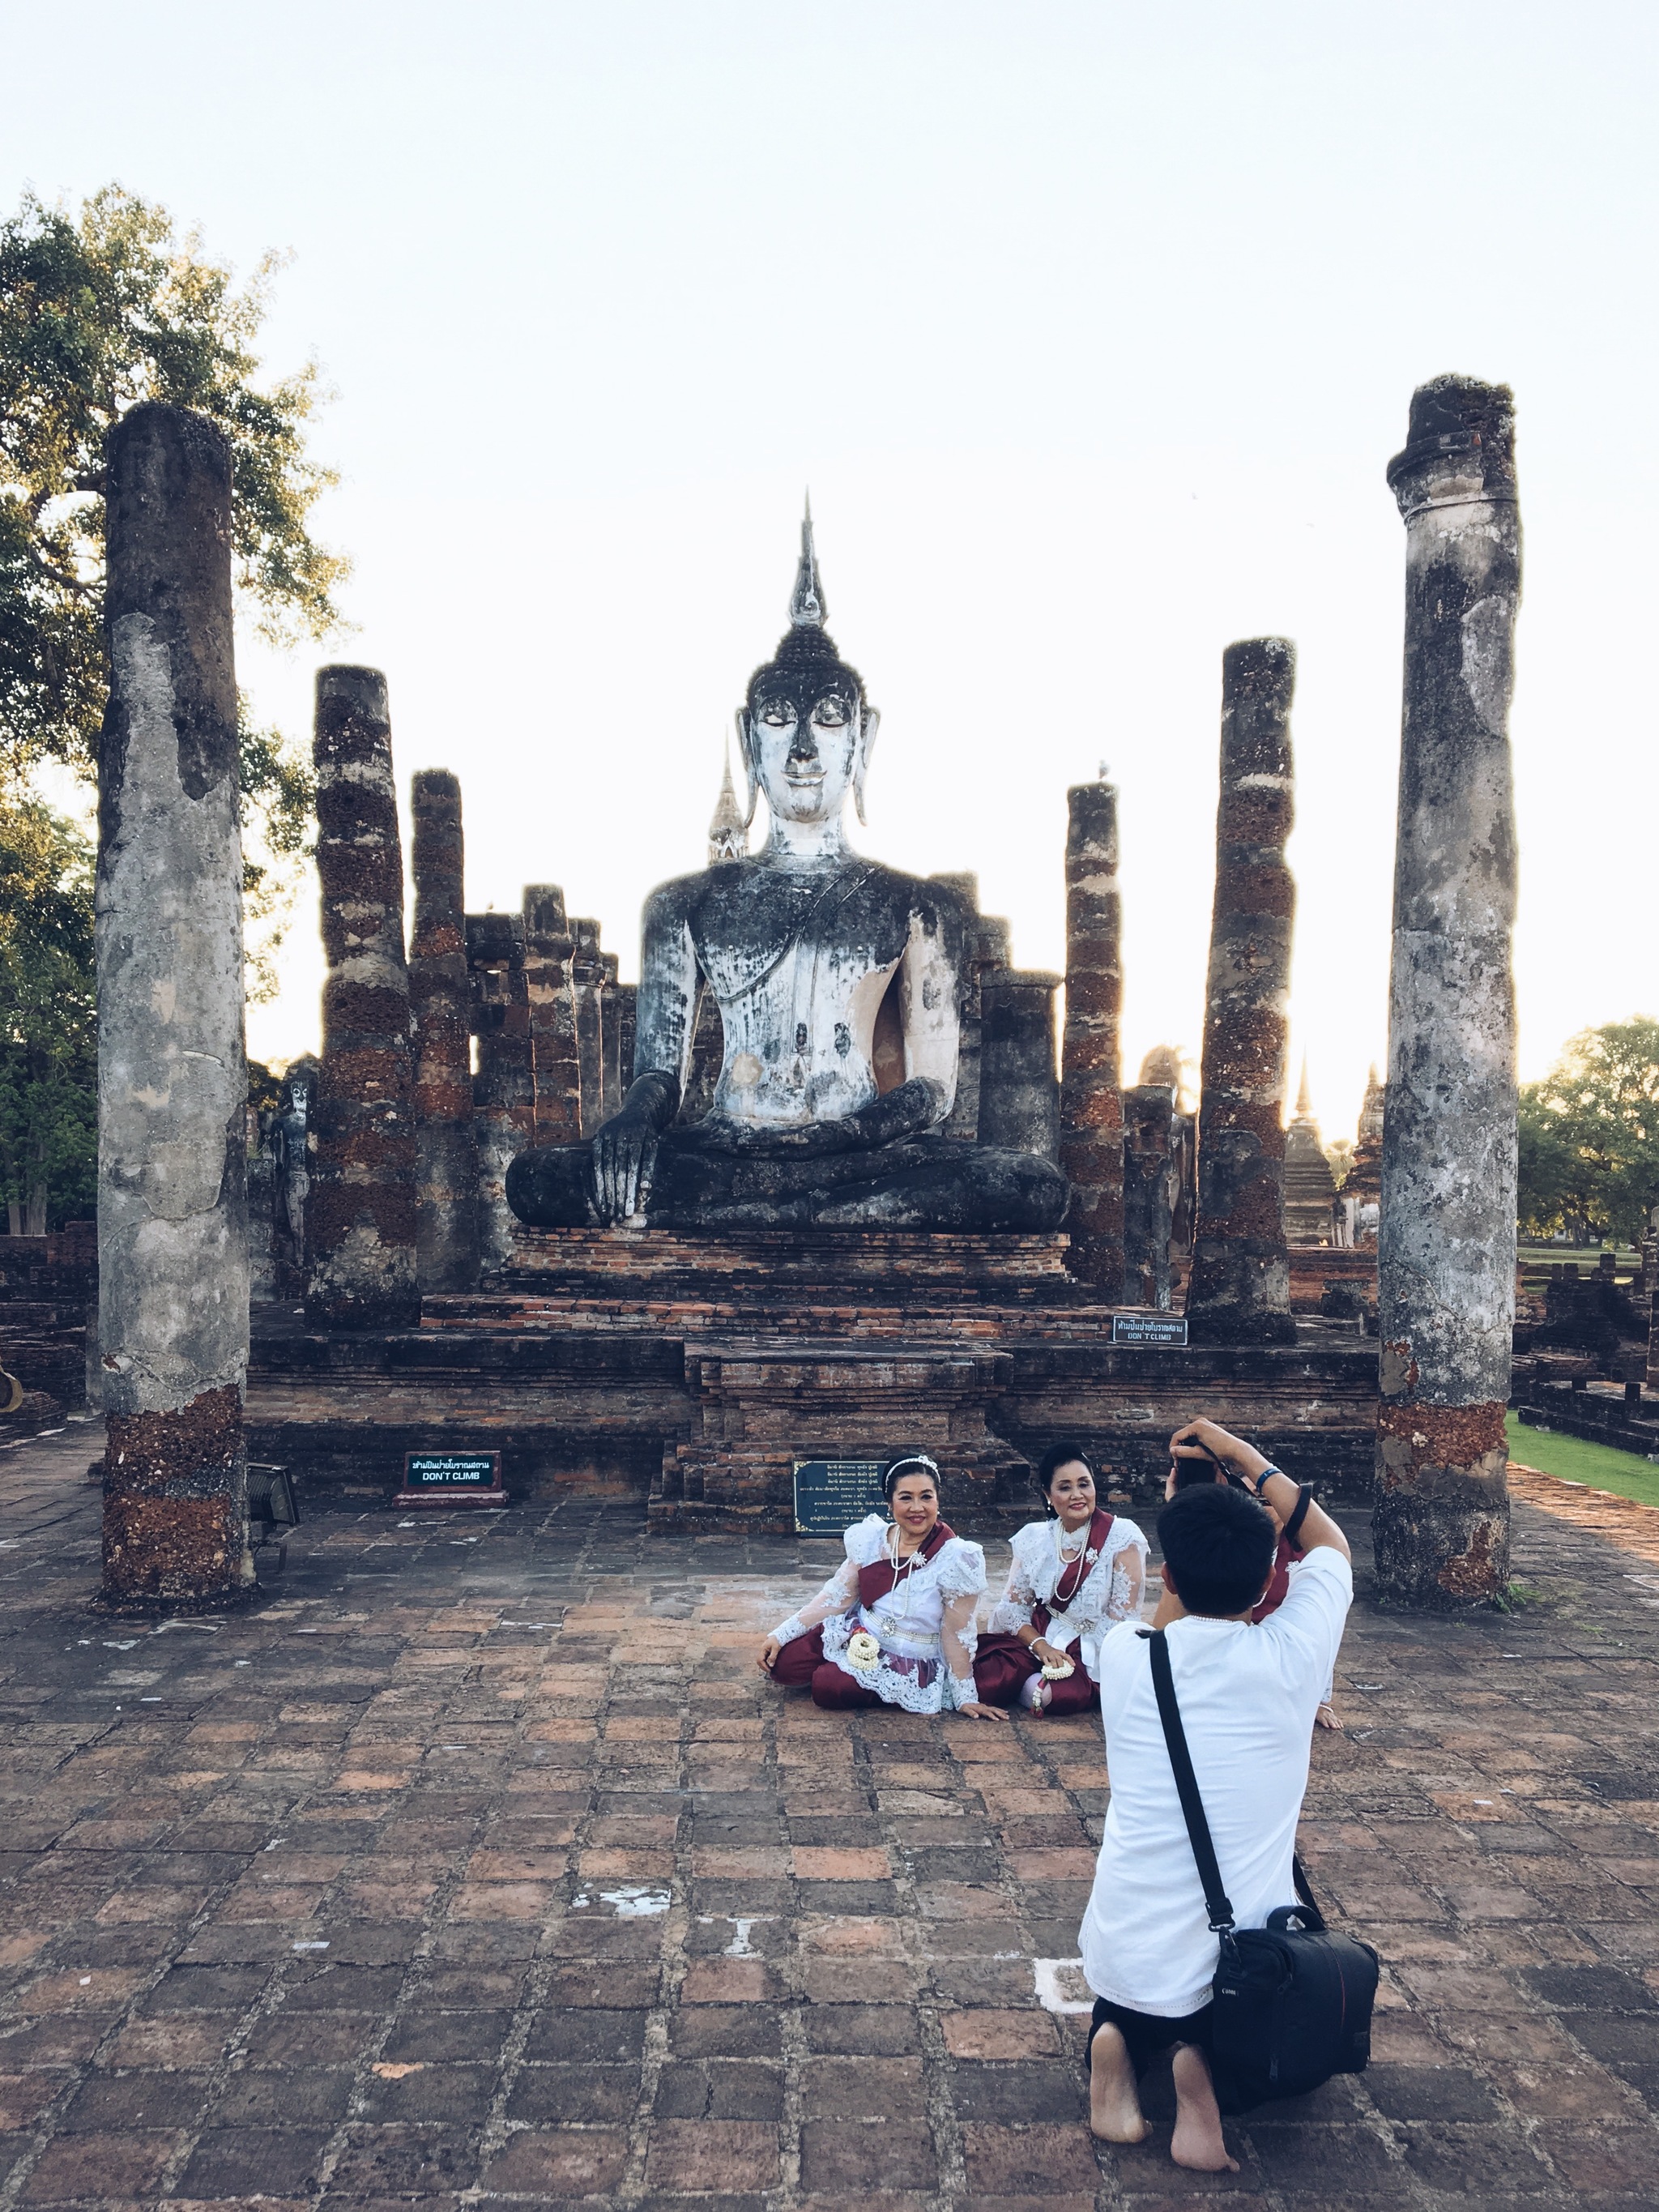 Un grupo de maestras celebran el día de su jubilación con una sesión fotográfica en el Parque Histórico de Sukhothai.